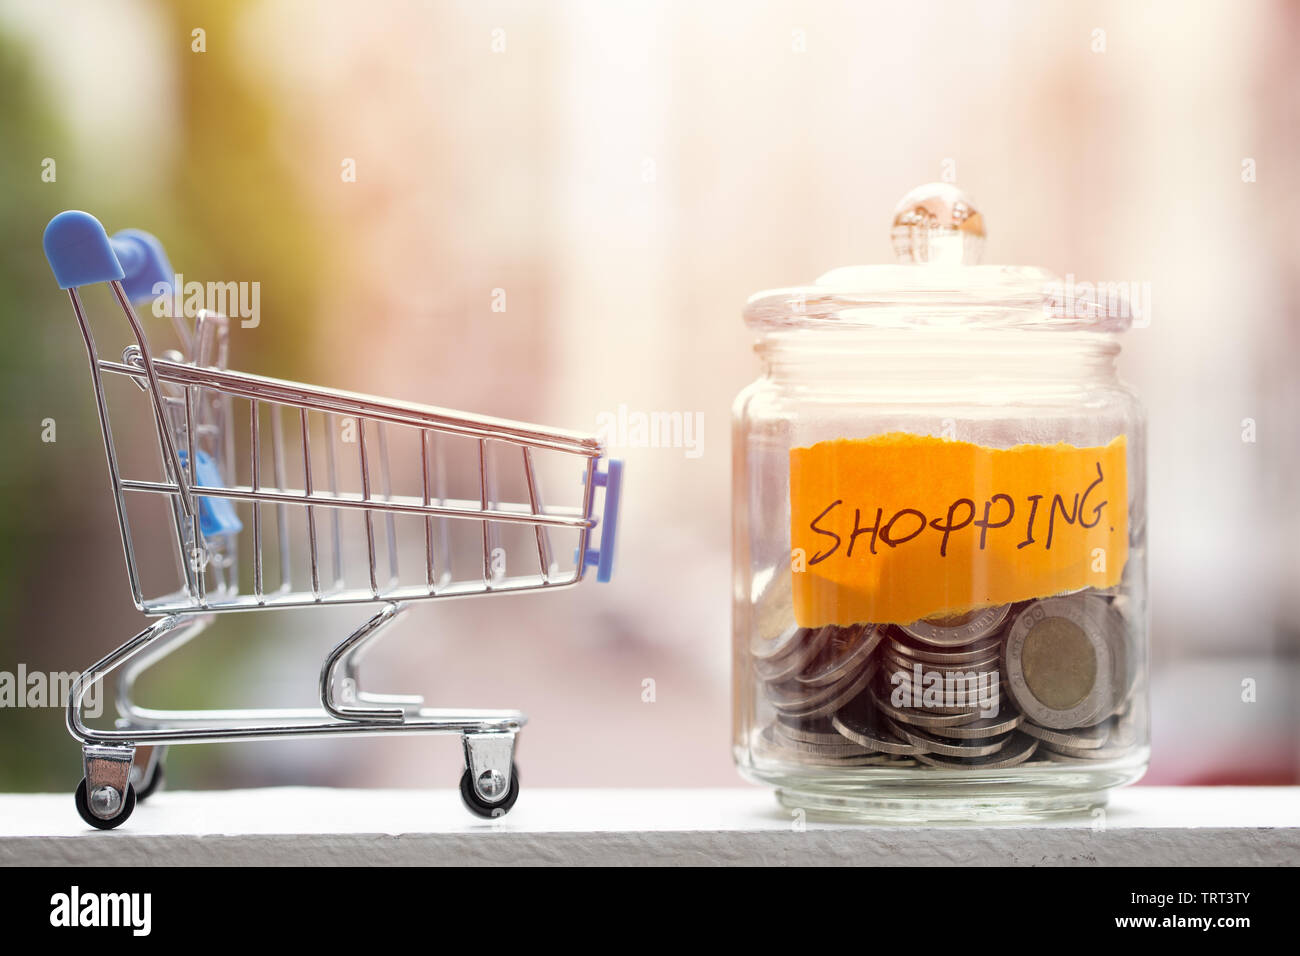 Geld sparen für Shopping Haushalt, Münzen halten im Glas mit Warenkorb Stockfoto